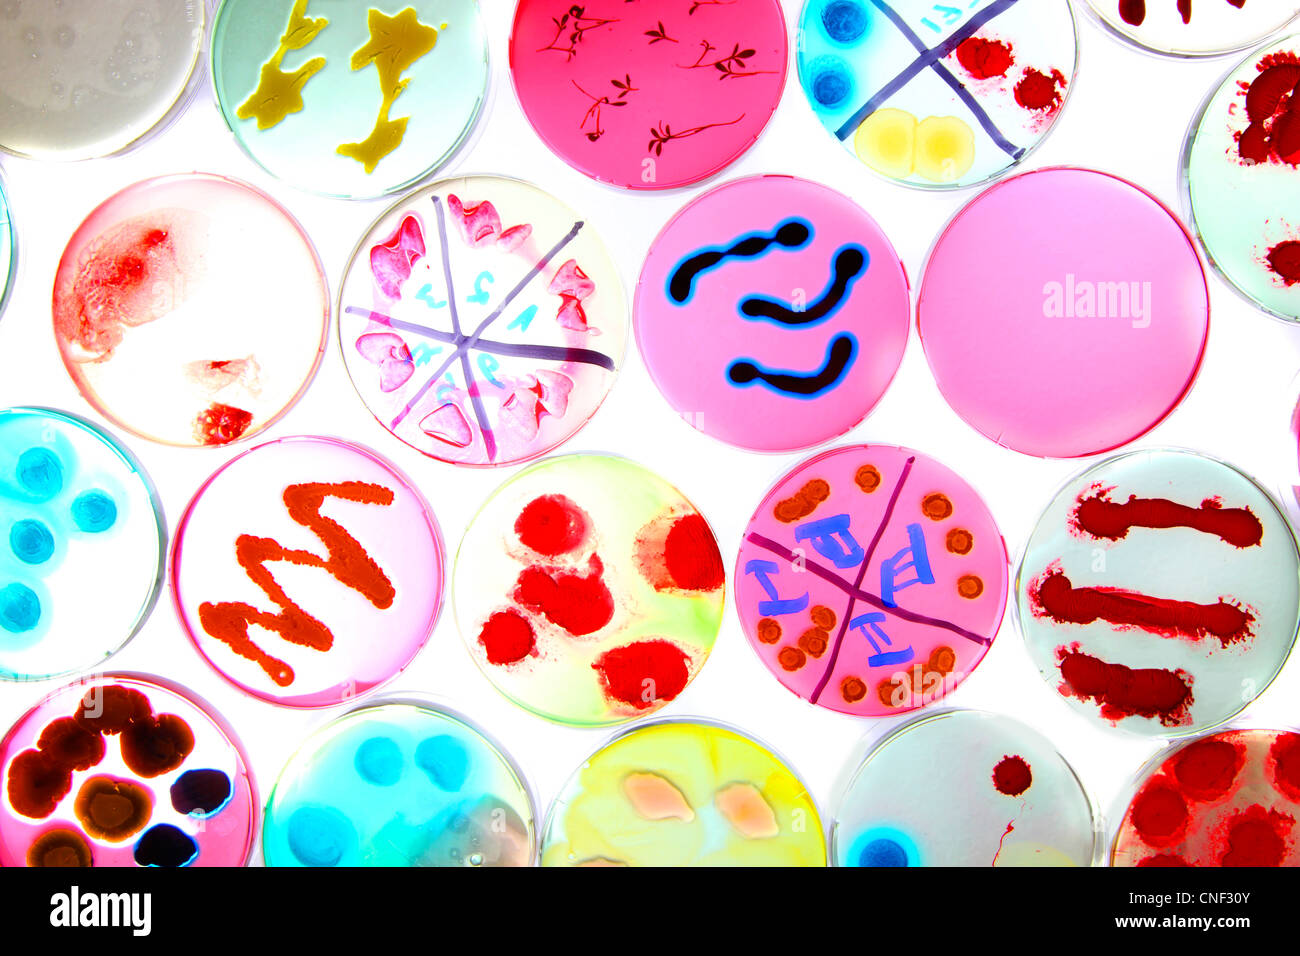 Laboratorio, biológicas, químicas. Análisis de cultivos bacterianos de bacterias que crecen en placas de petri. Foto de stock